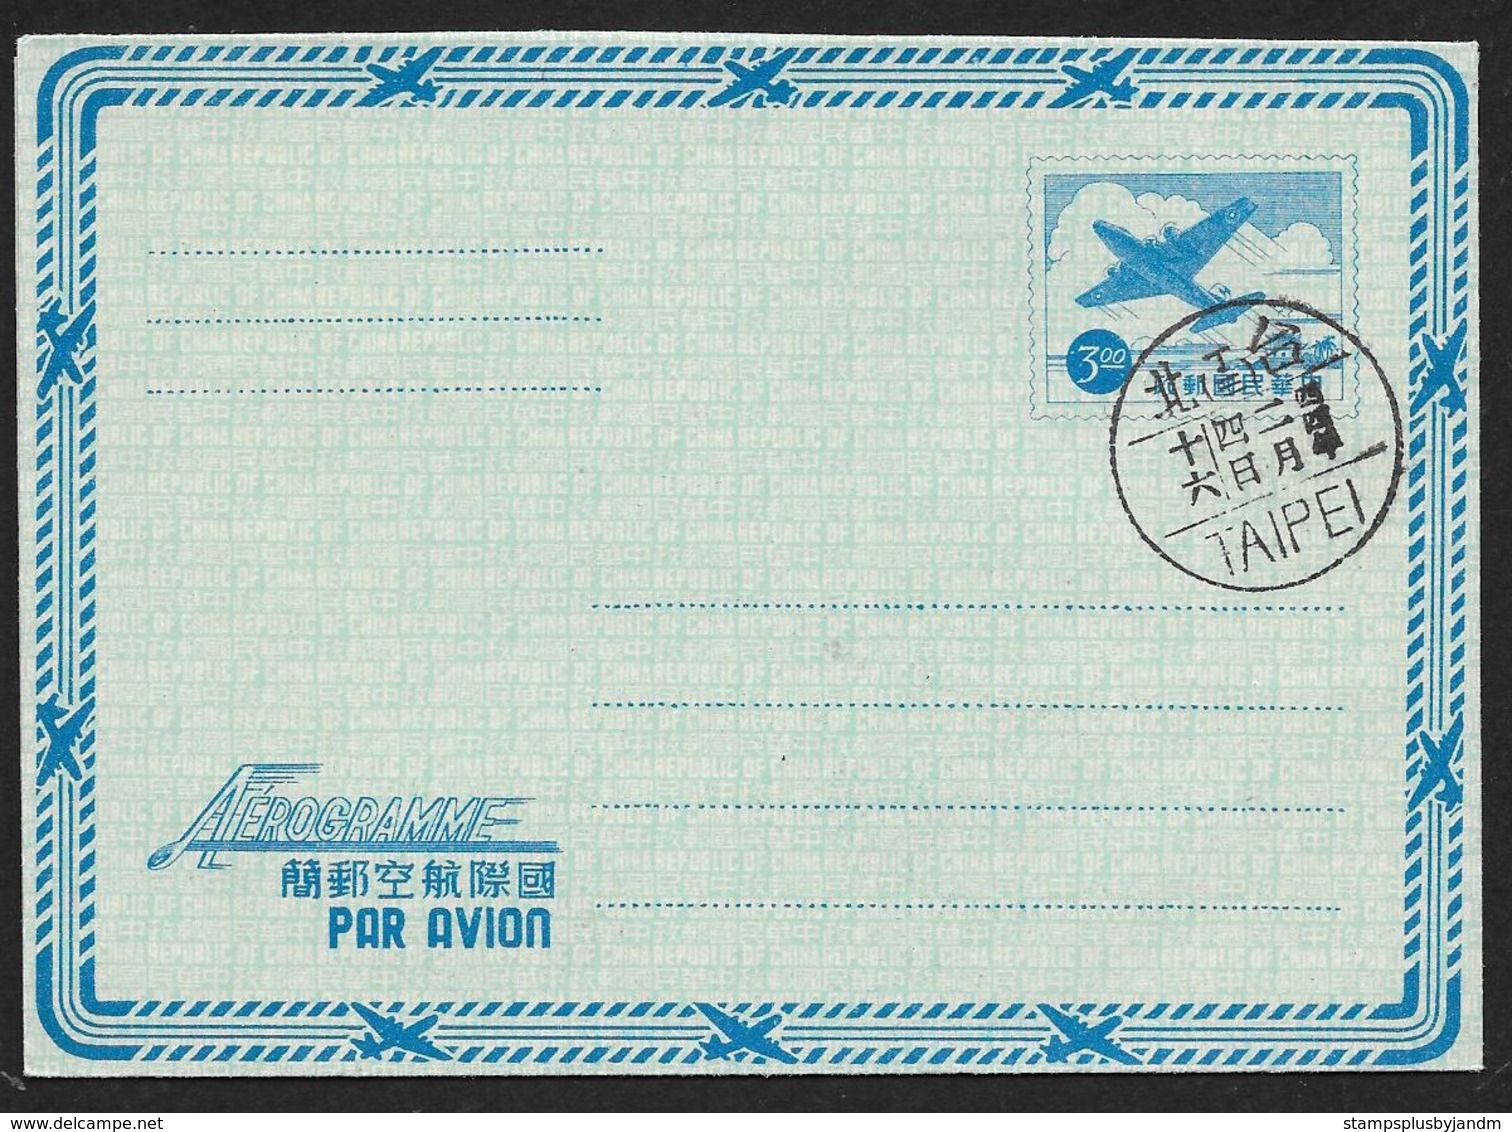 REPUBLIC OF CHINA (TAIWAN) Aerogramme $3 Airplane C1950-1960s Taipei Cancel! STK#X21229 - Enteros Postales